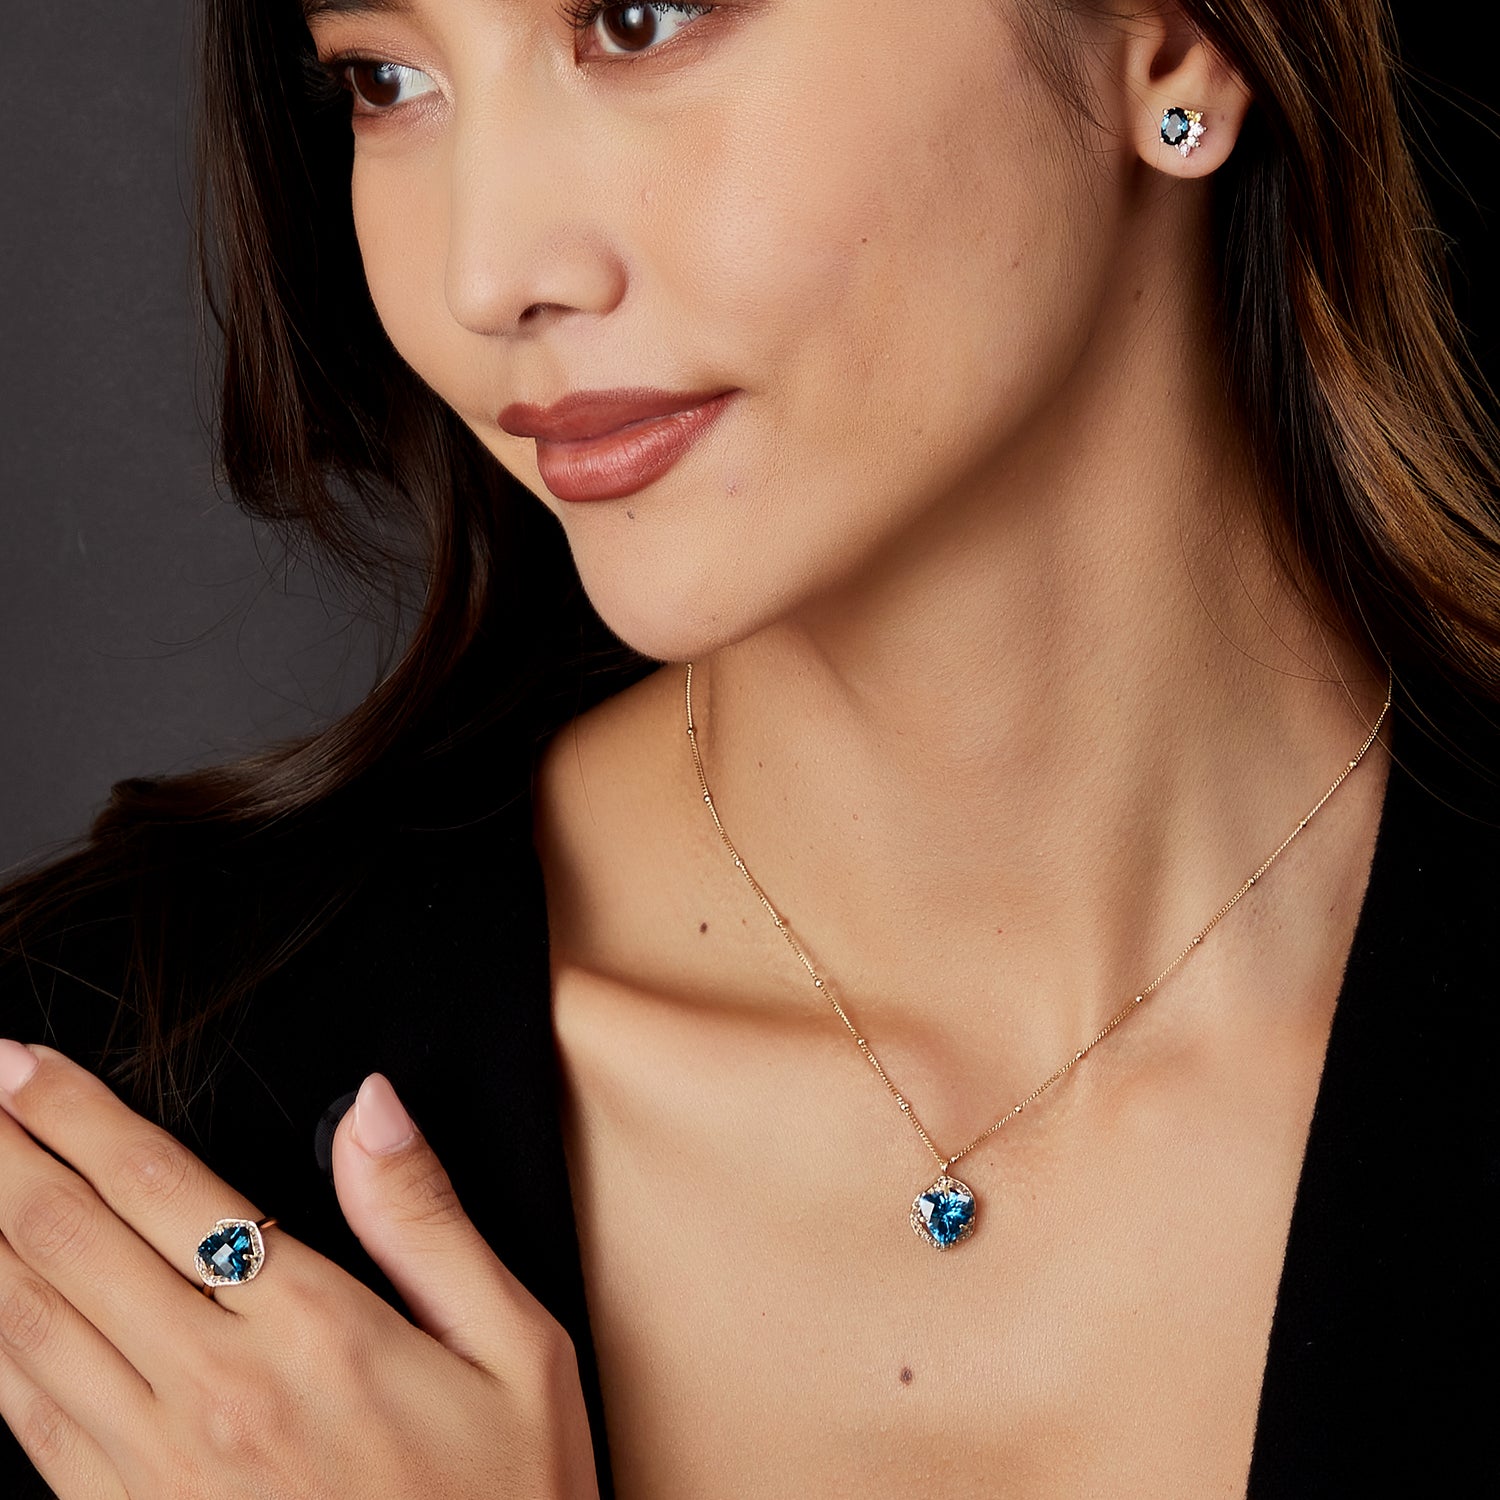 Blue Topaz Dangling Diamond Post Earrings by Mabel Chong | Unique Handmade Earrings | Fine Jewelry for Women